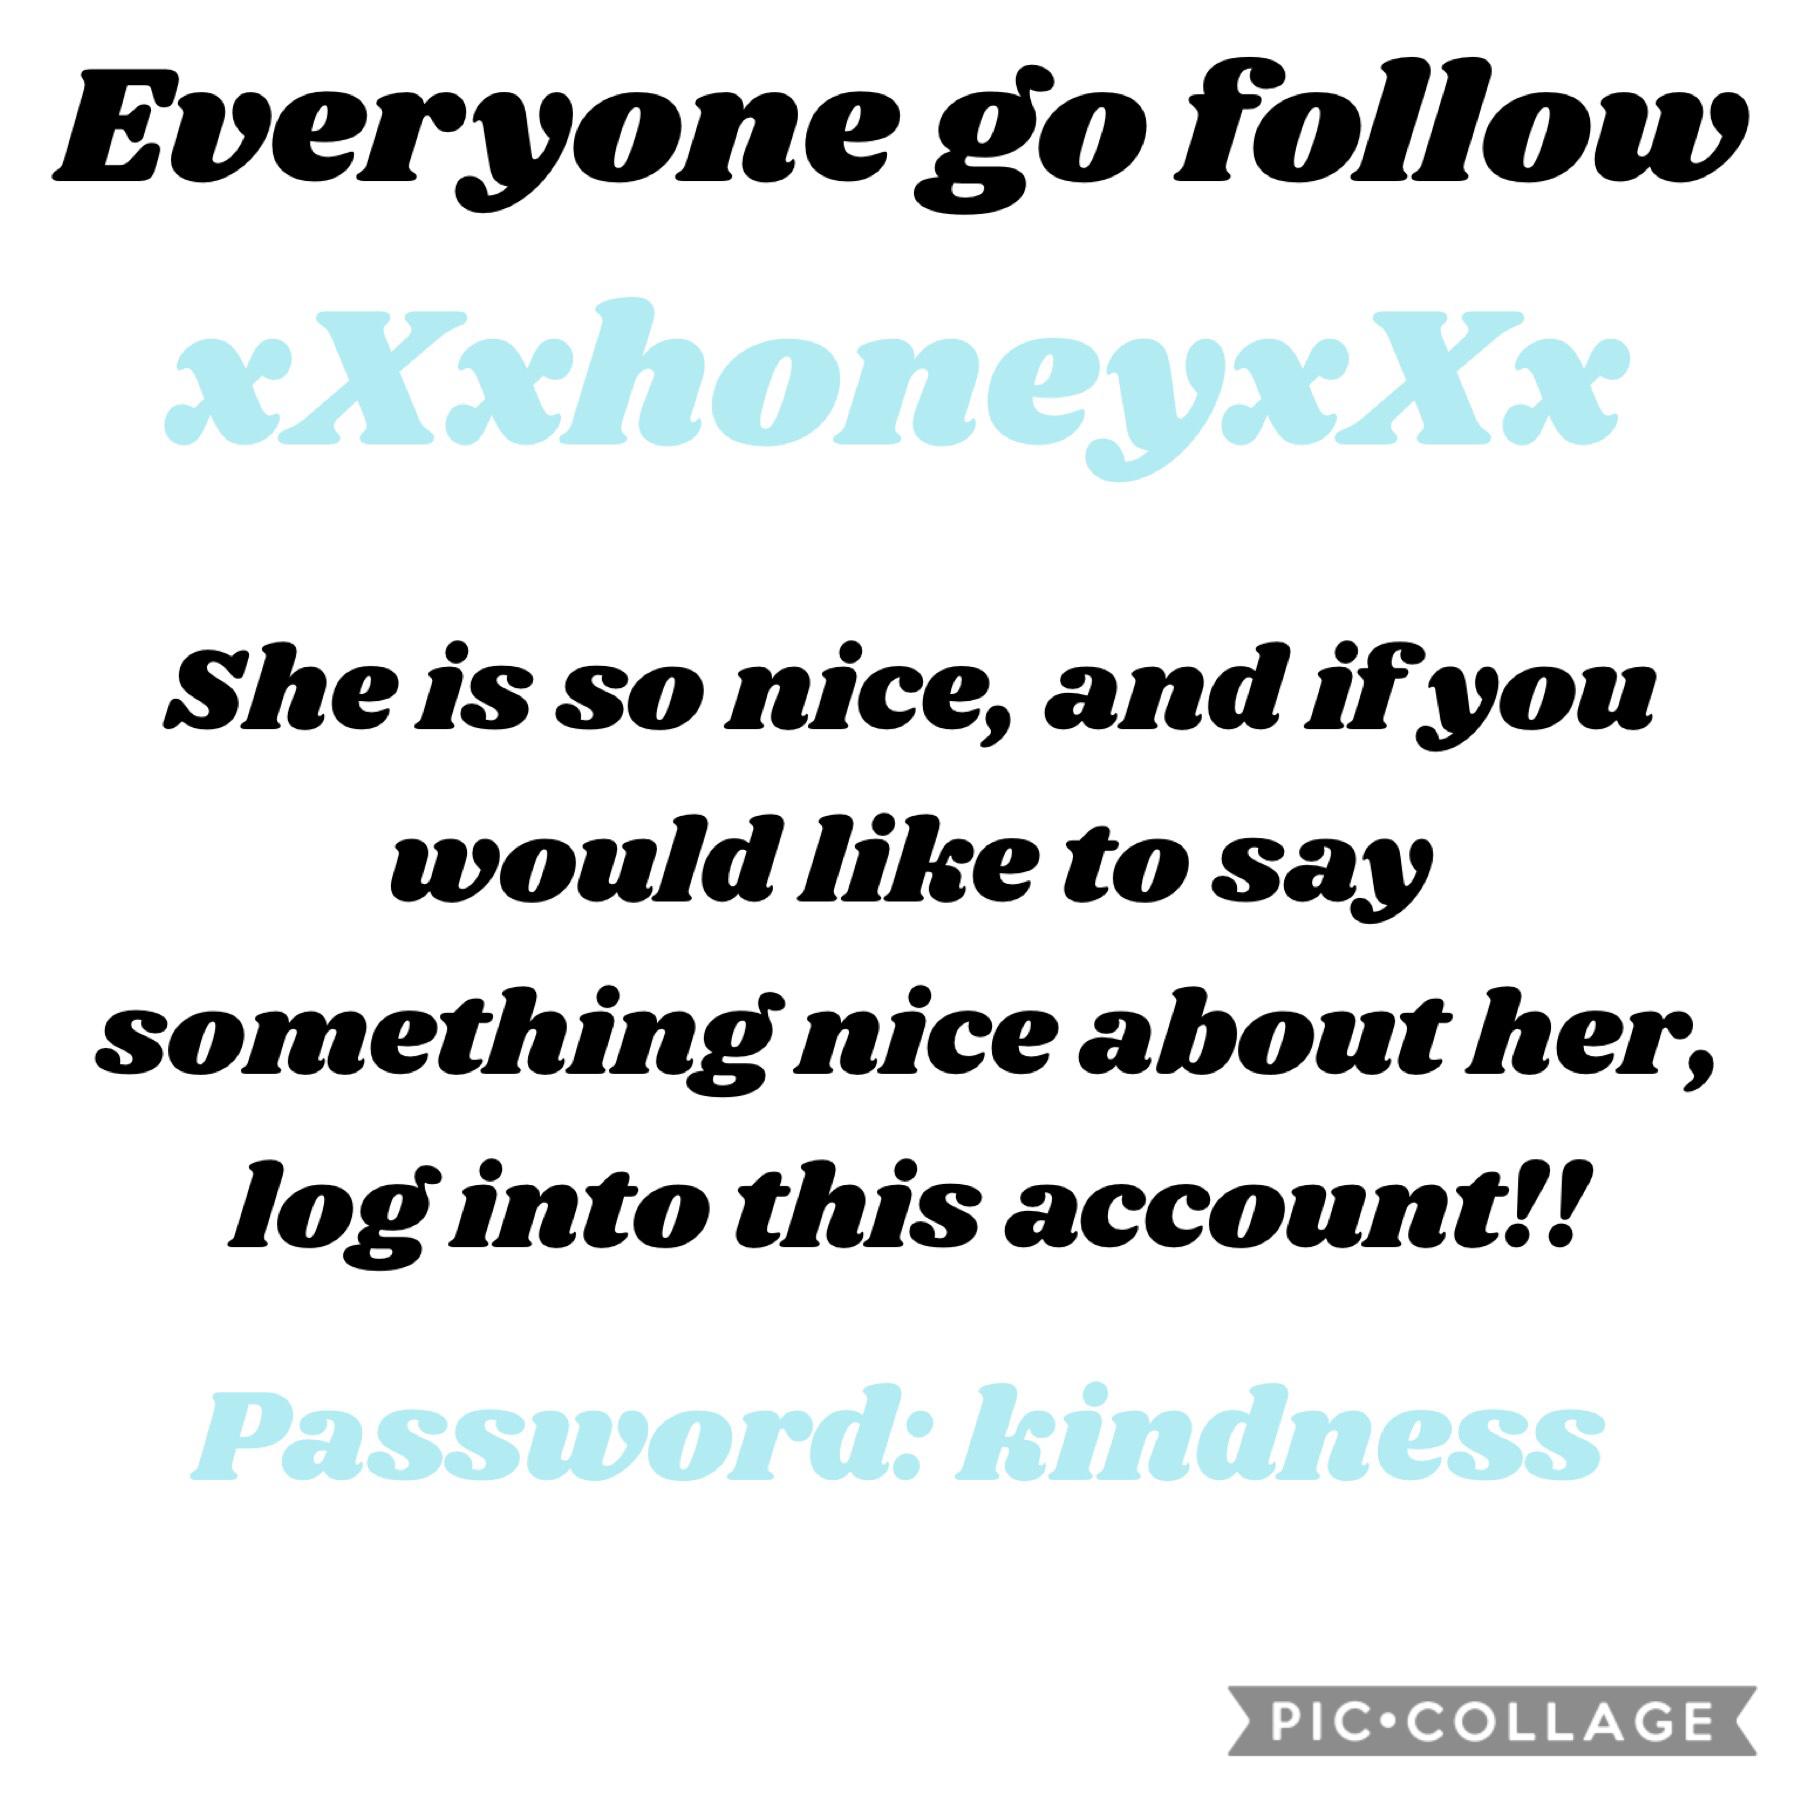 Go Follow xXxhoneyxXx!!!